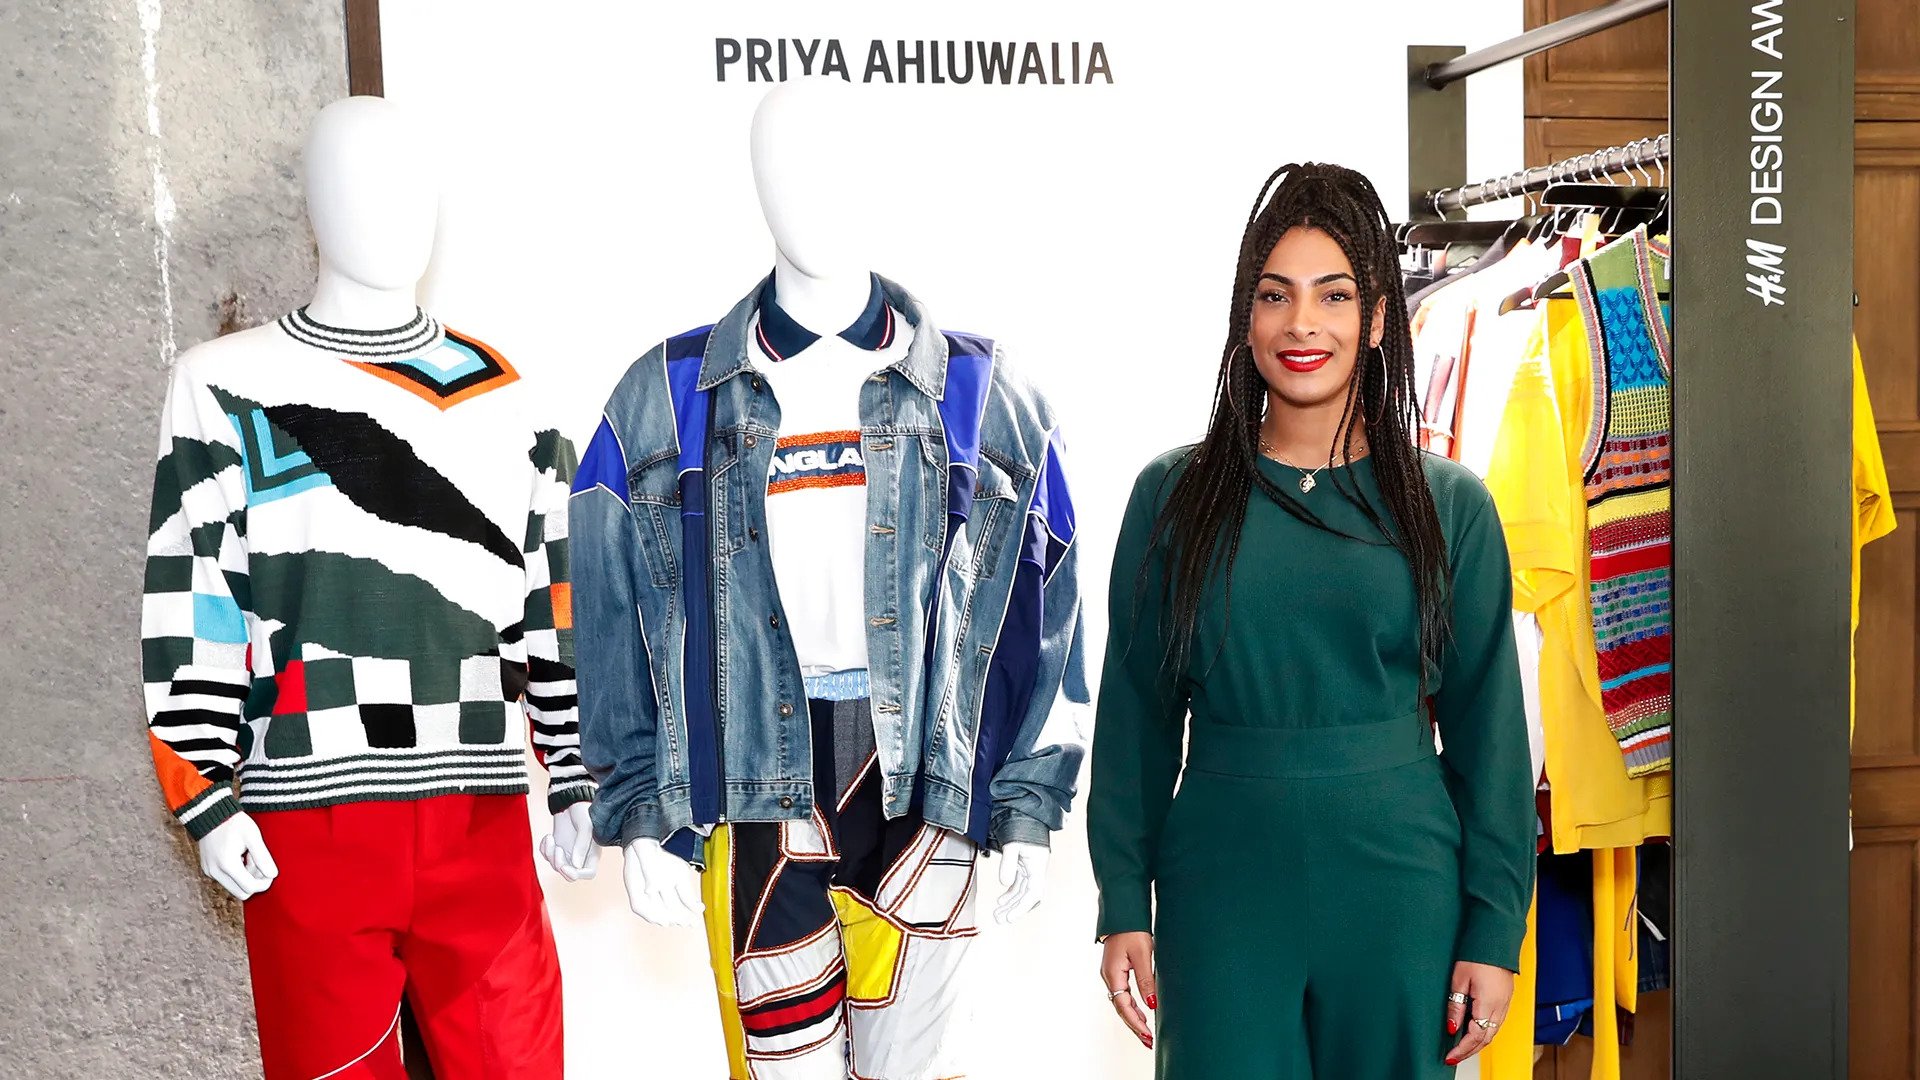 Priya Ahluwalia | Ấn Độ toàn cầu | Nhà thiết kế